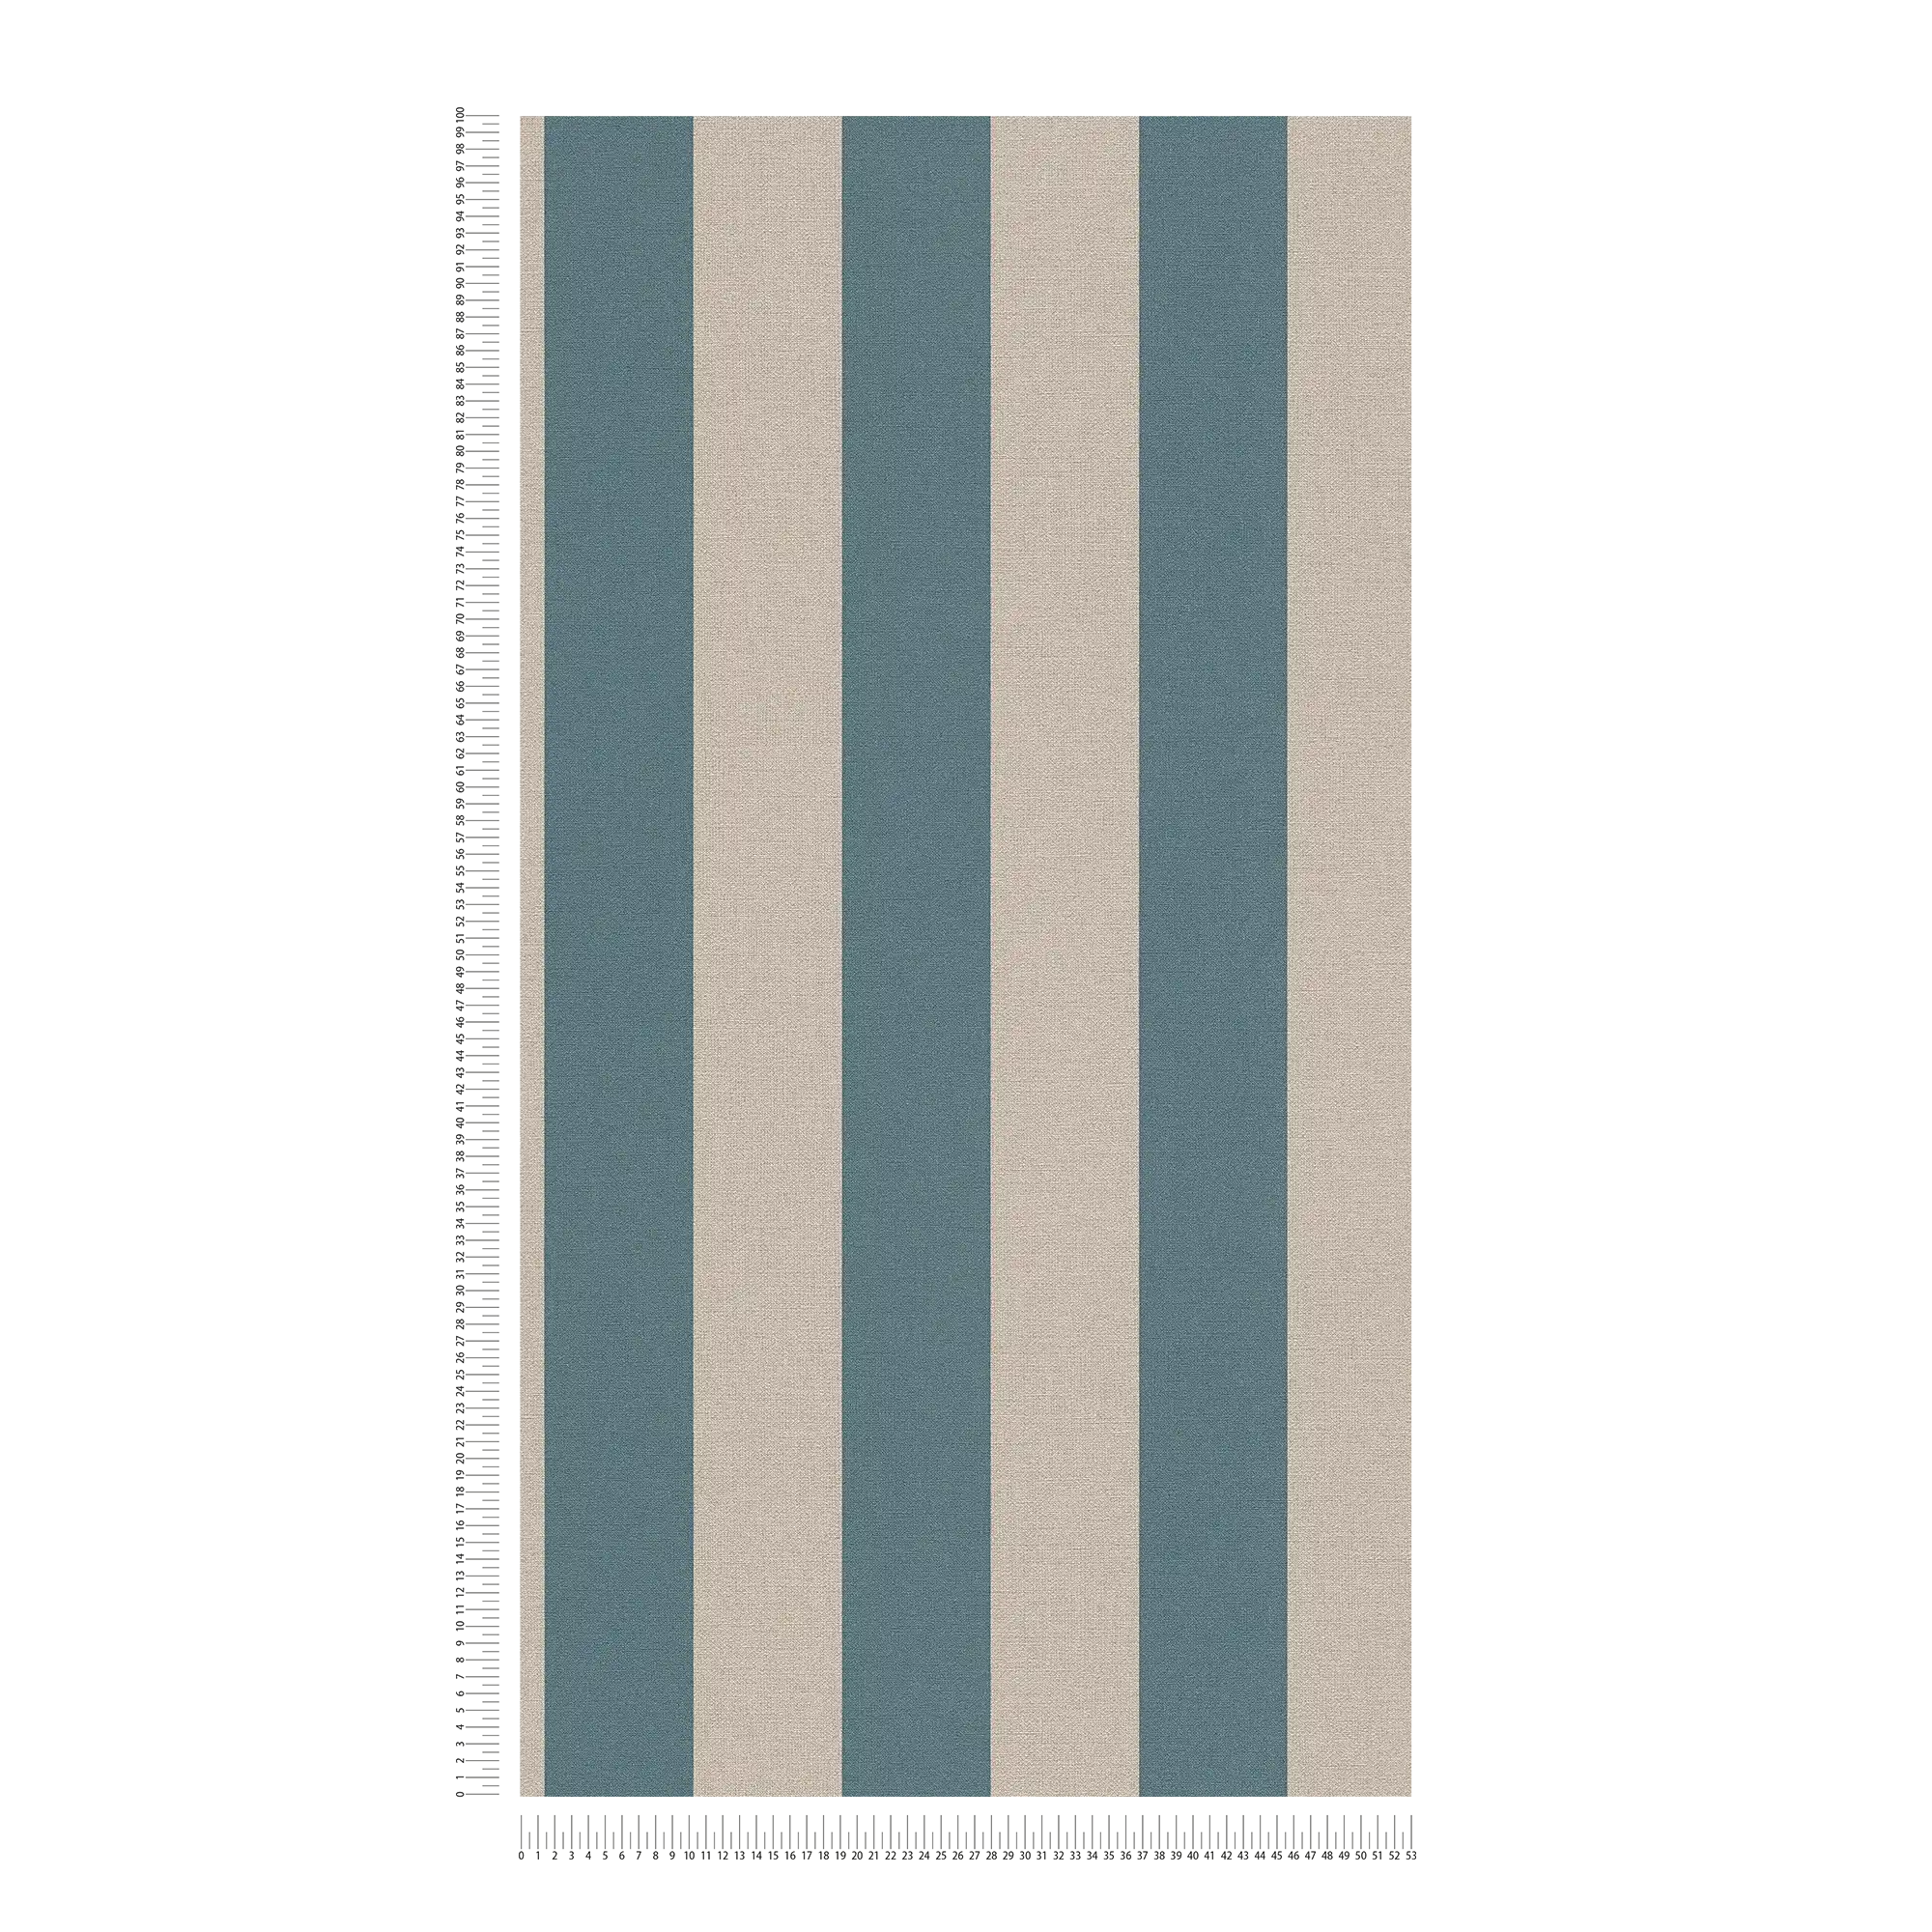             Papel pintado a rayas con aspecto de lino sin PVC - azul, marrón
        